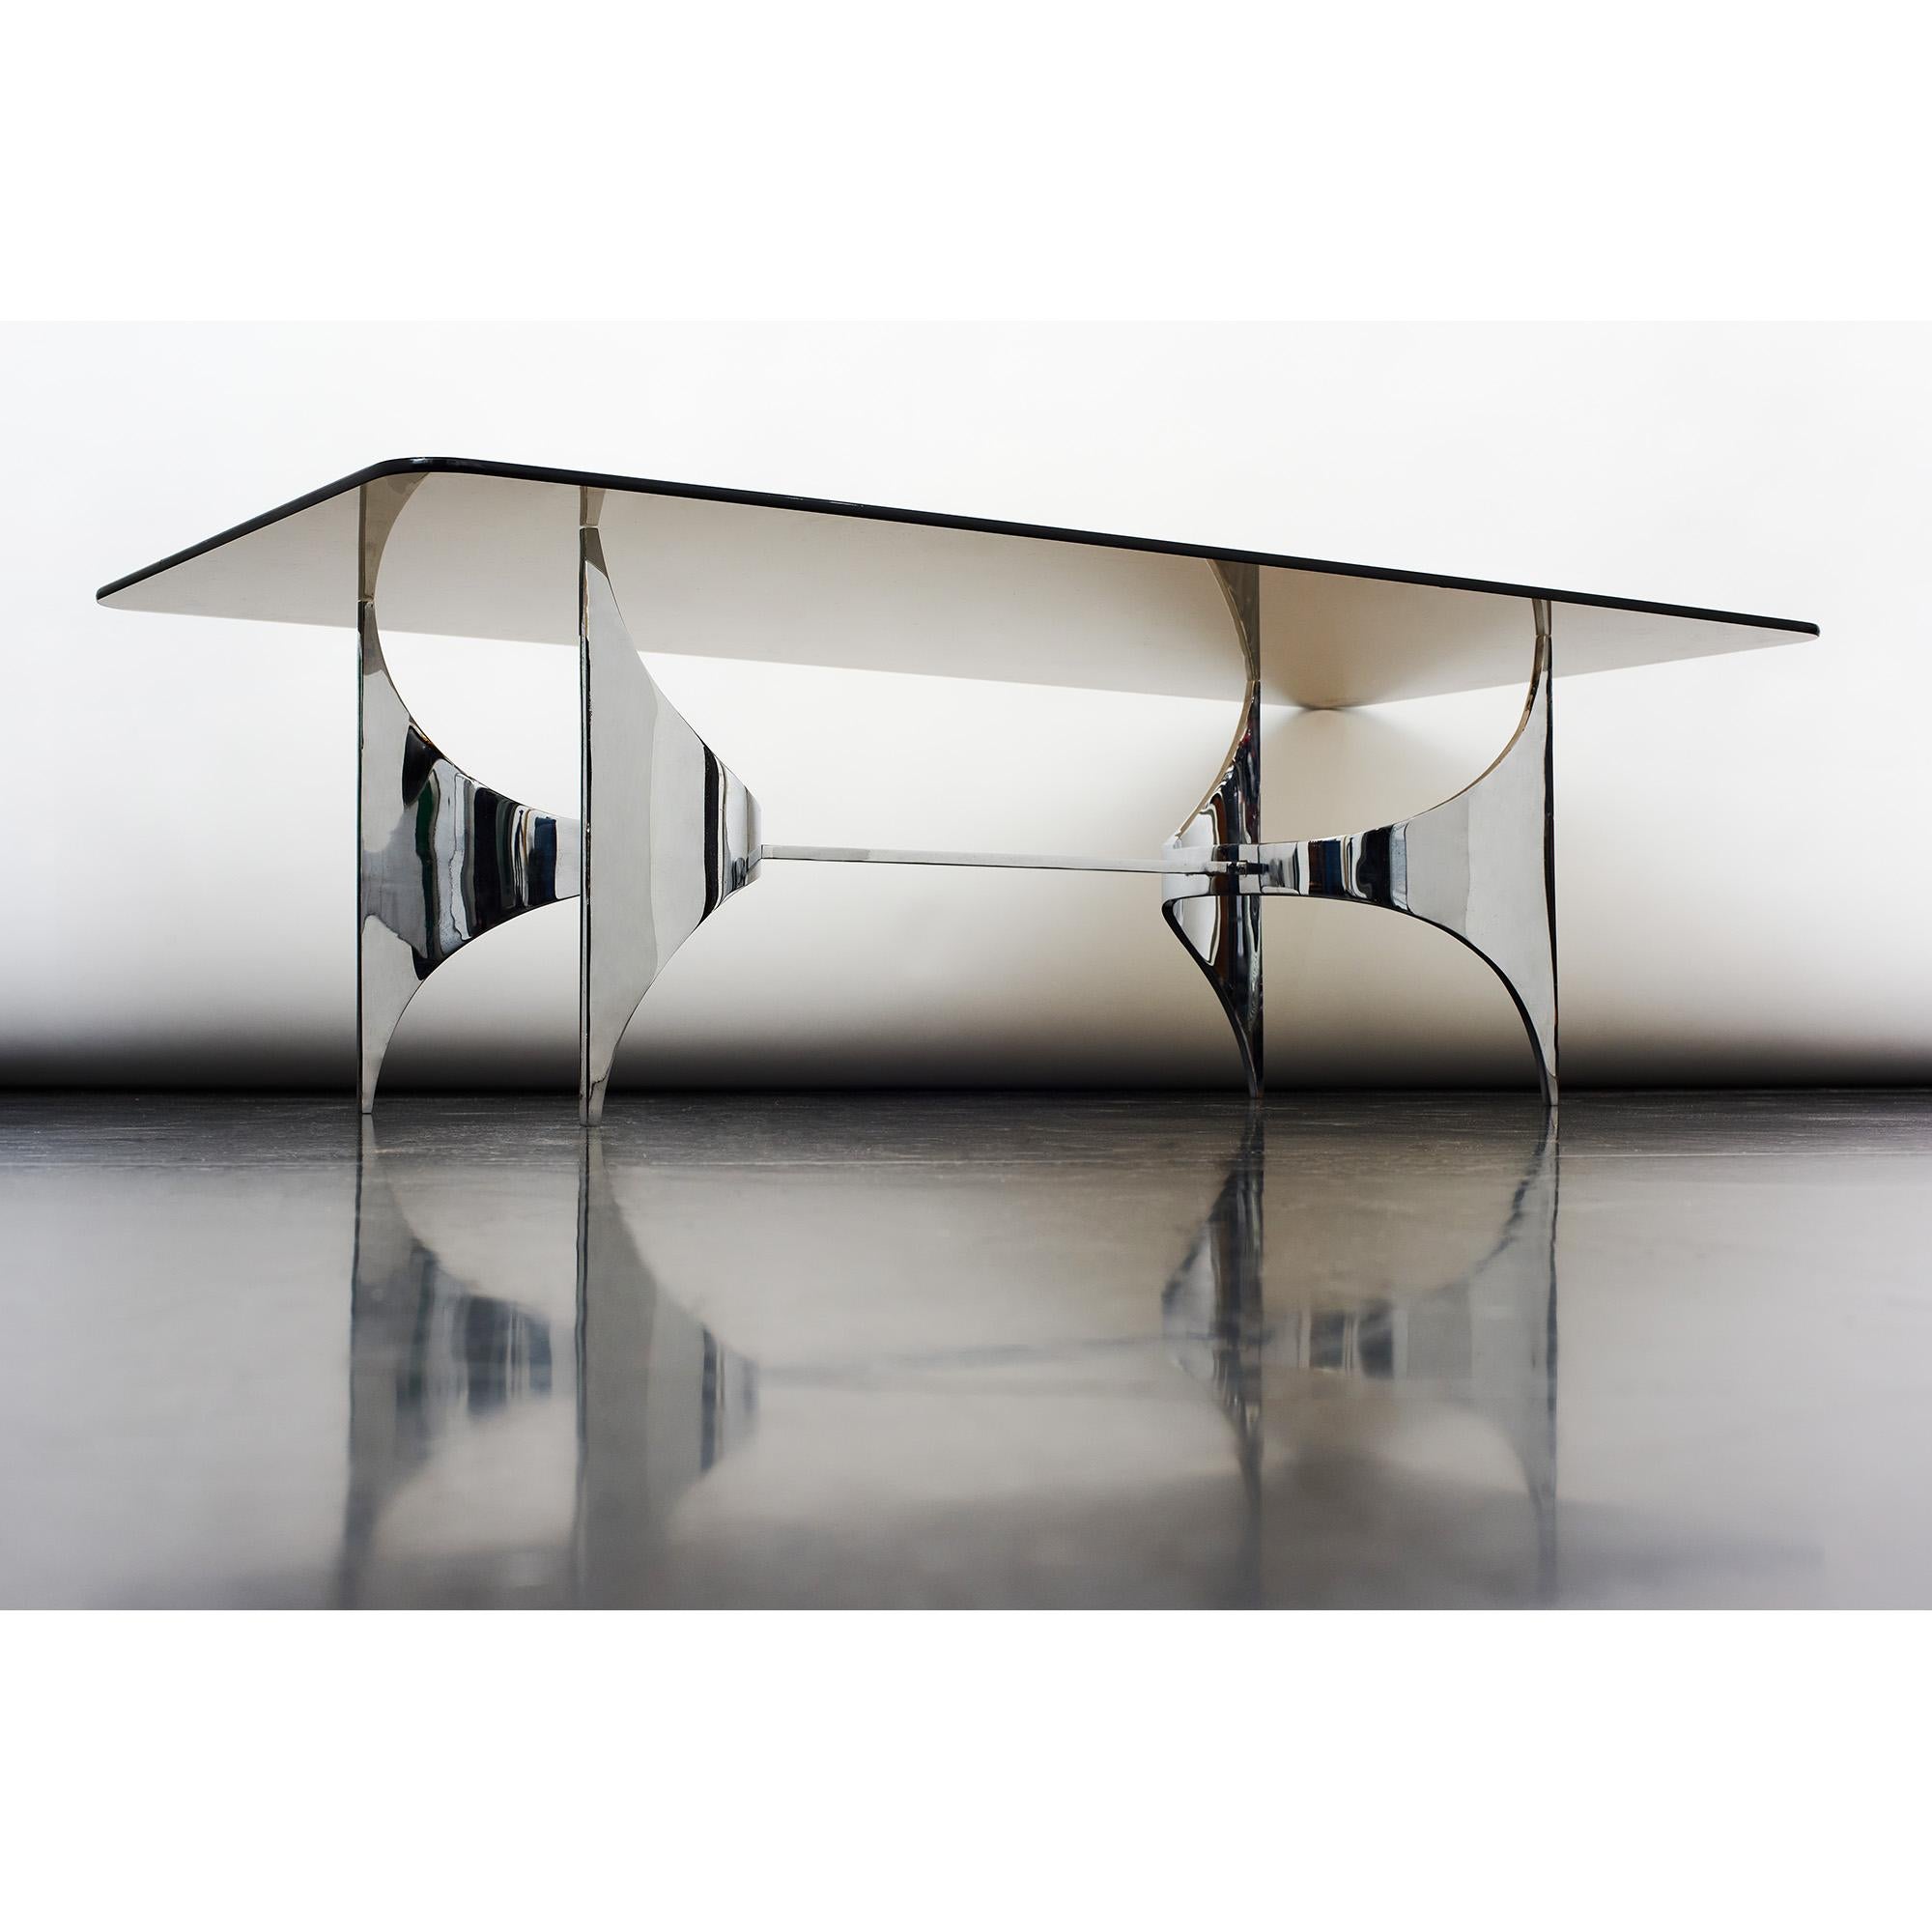 Table basse sculpturale dans le style de Knut Hesterberg pour Ronald Schmitt, Allemagne, 1970.
Pieds aérodynamiques en acier inoxydable avec verre caramel fumé sur le dessus.